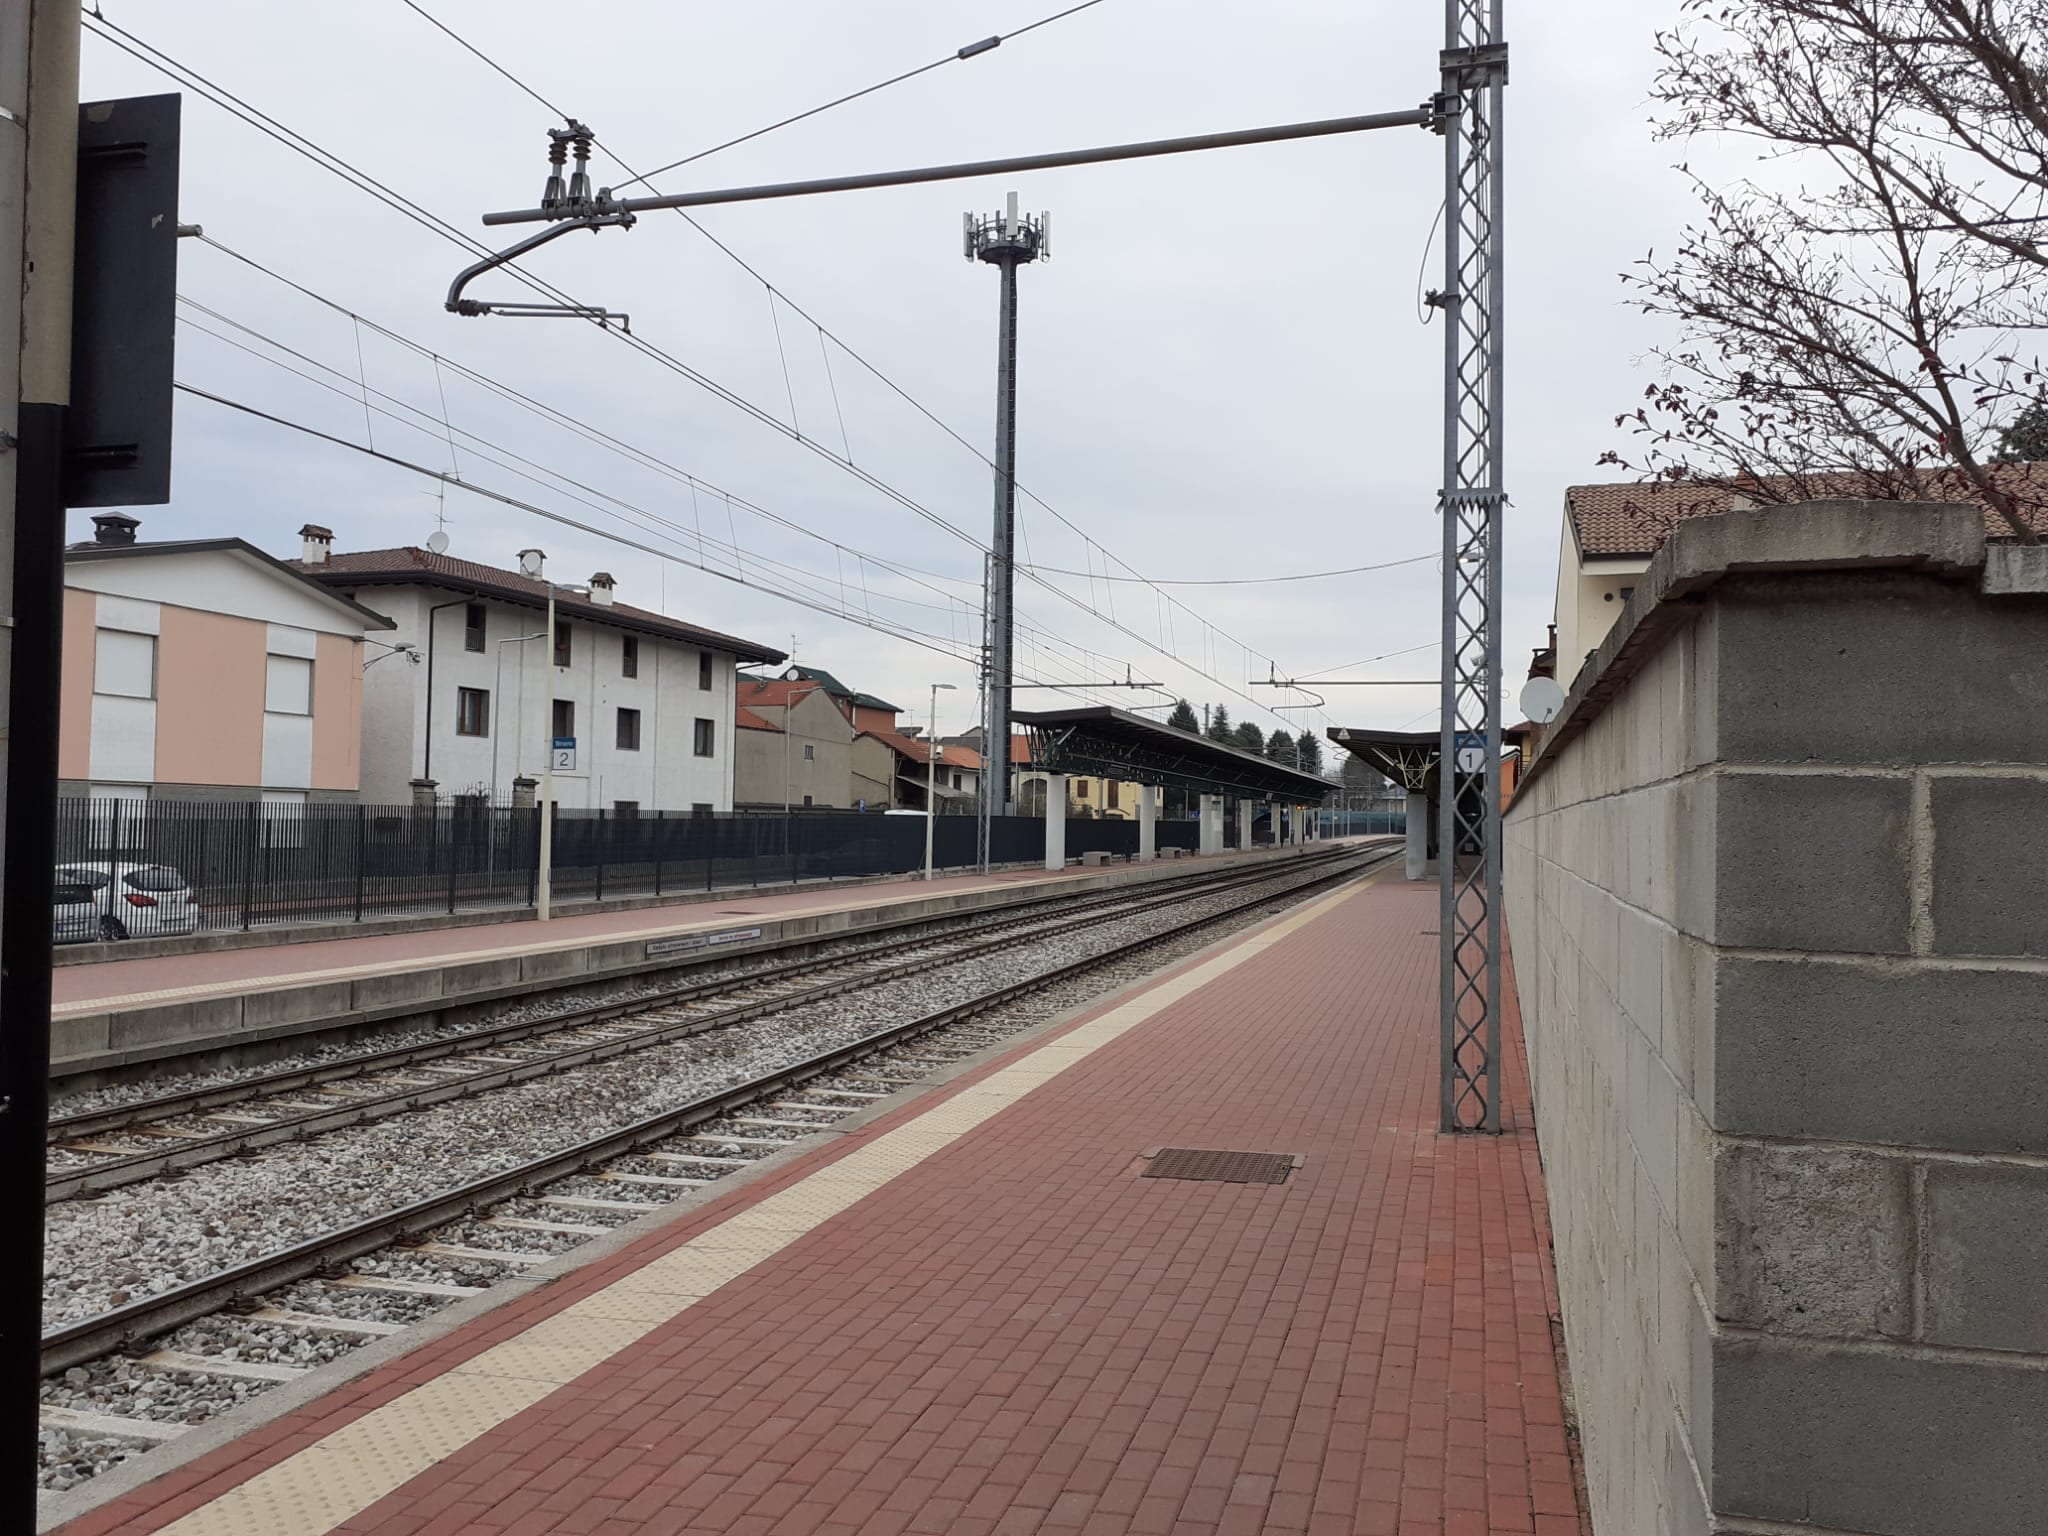 Maxi rissa fra ultras a Como: quelli del Modena erano saliti in treno a Rovello Porro